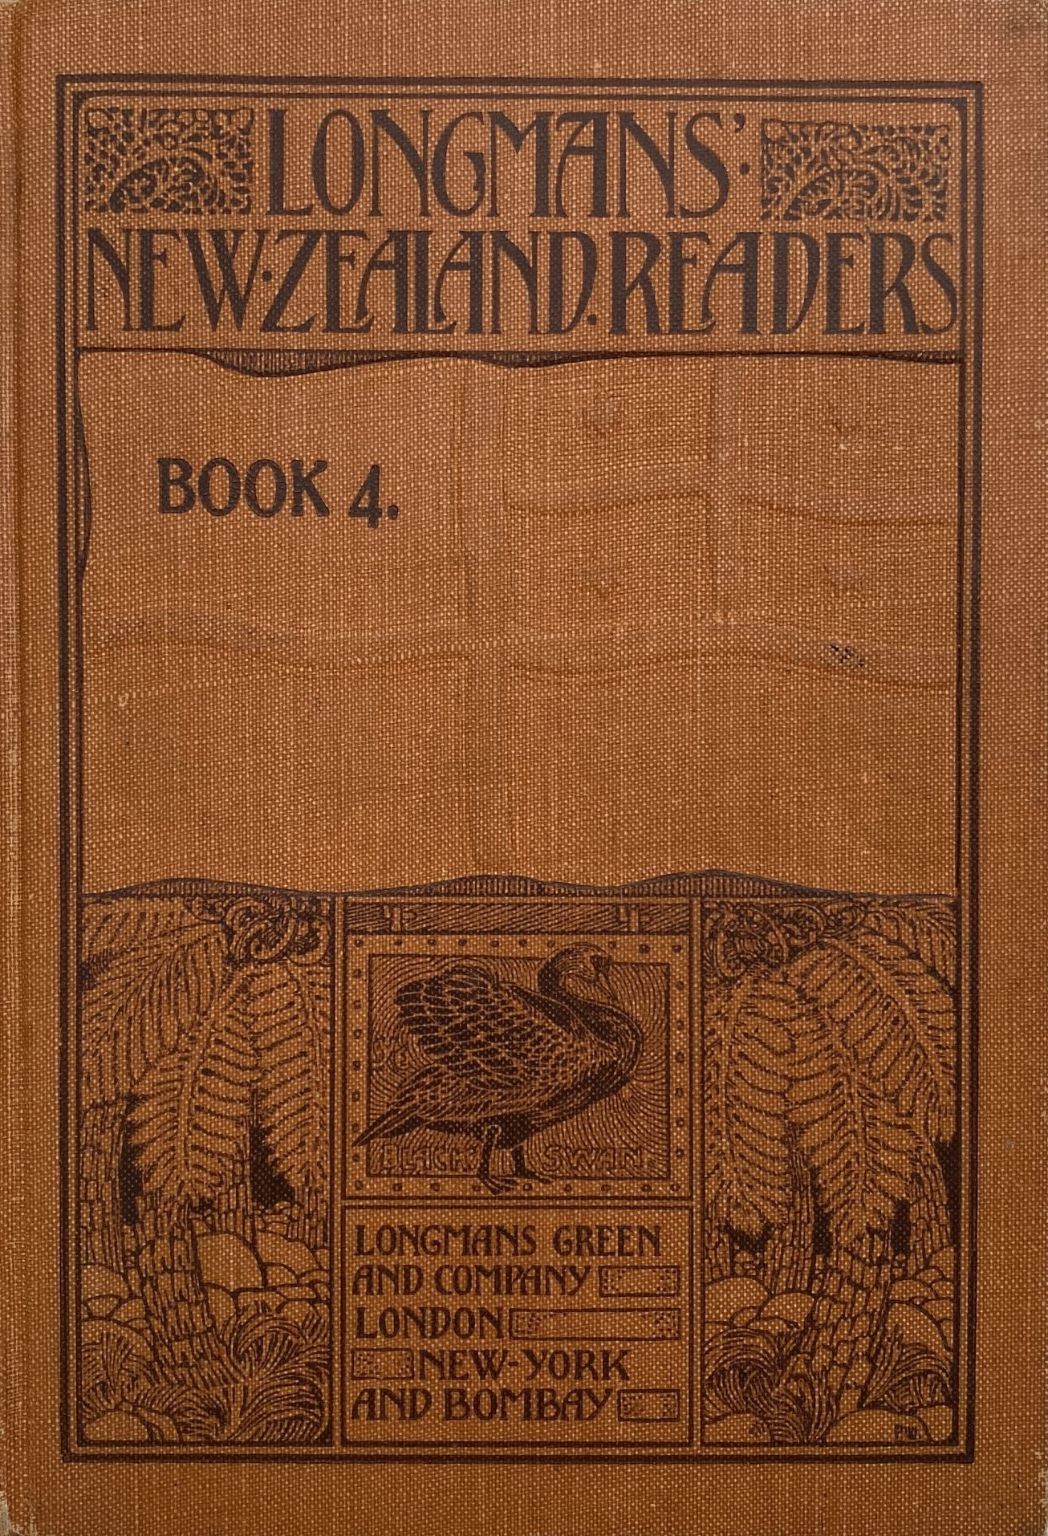 LONGMANS' NEW ZEALAND READERS - Book 4